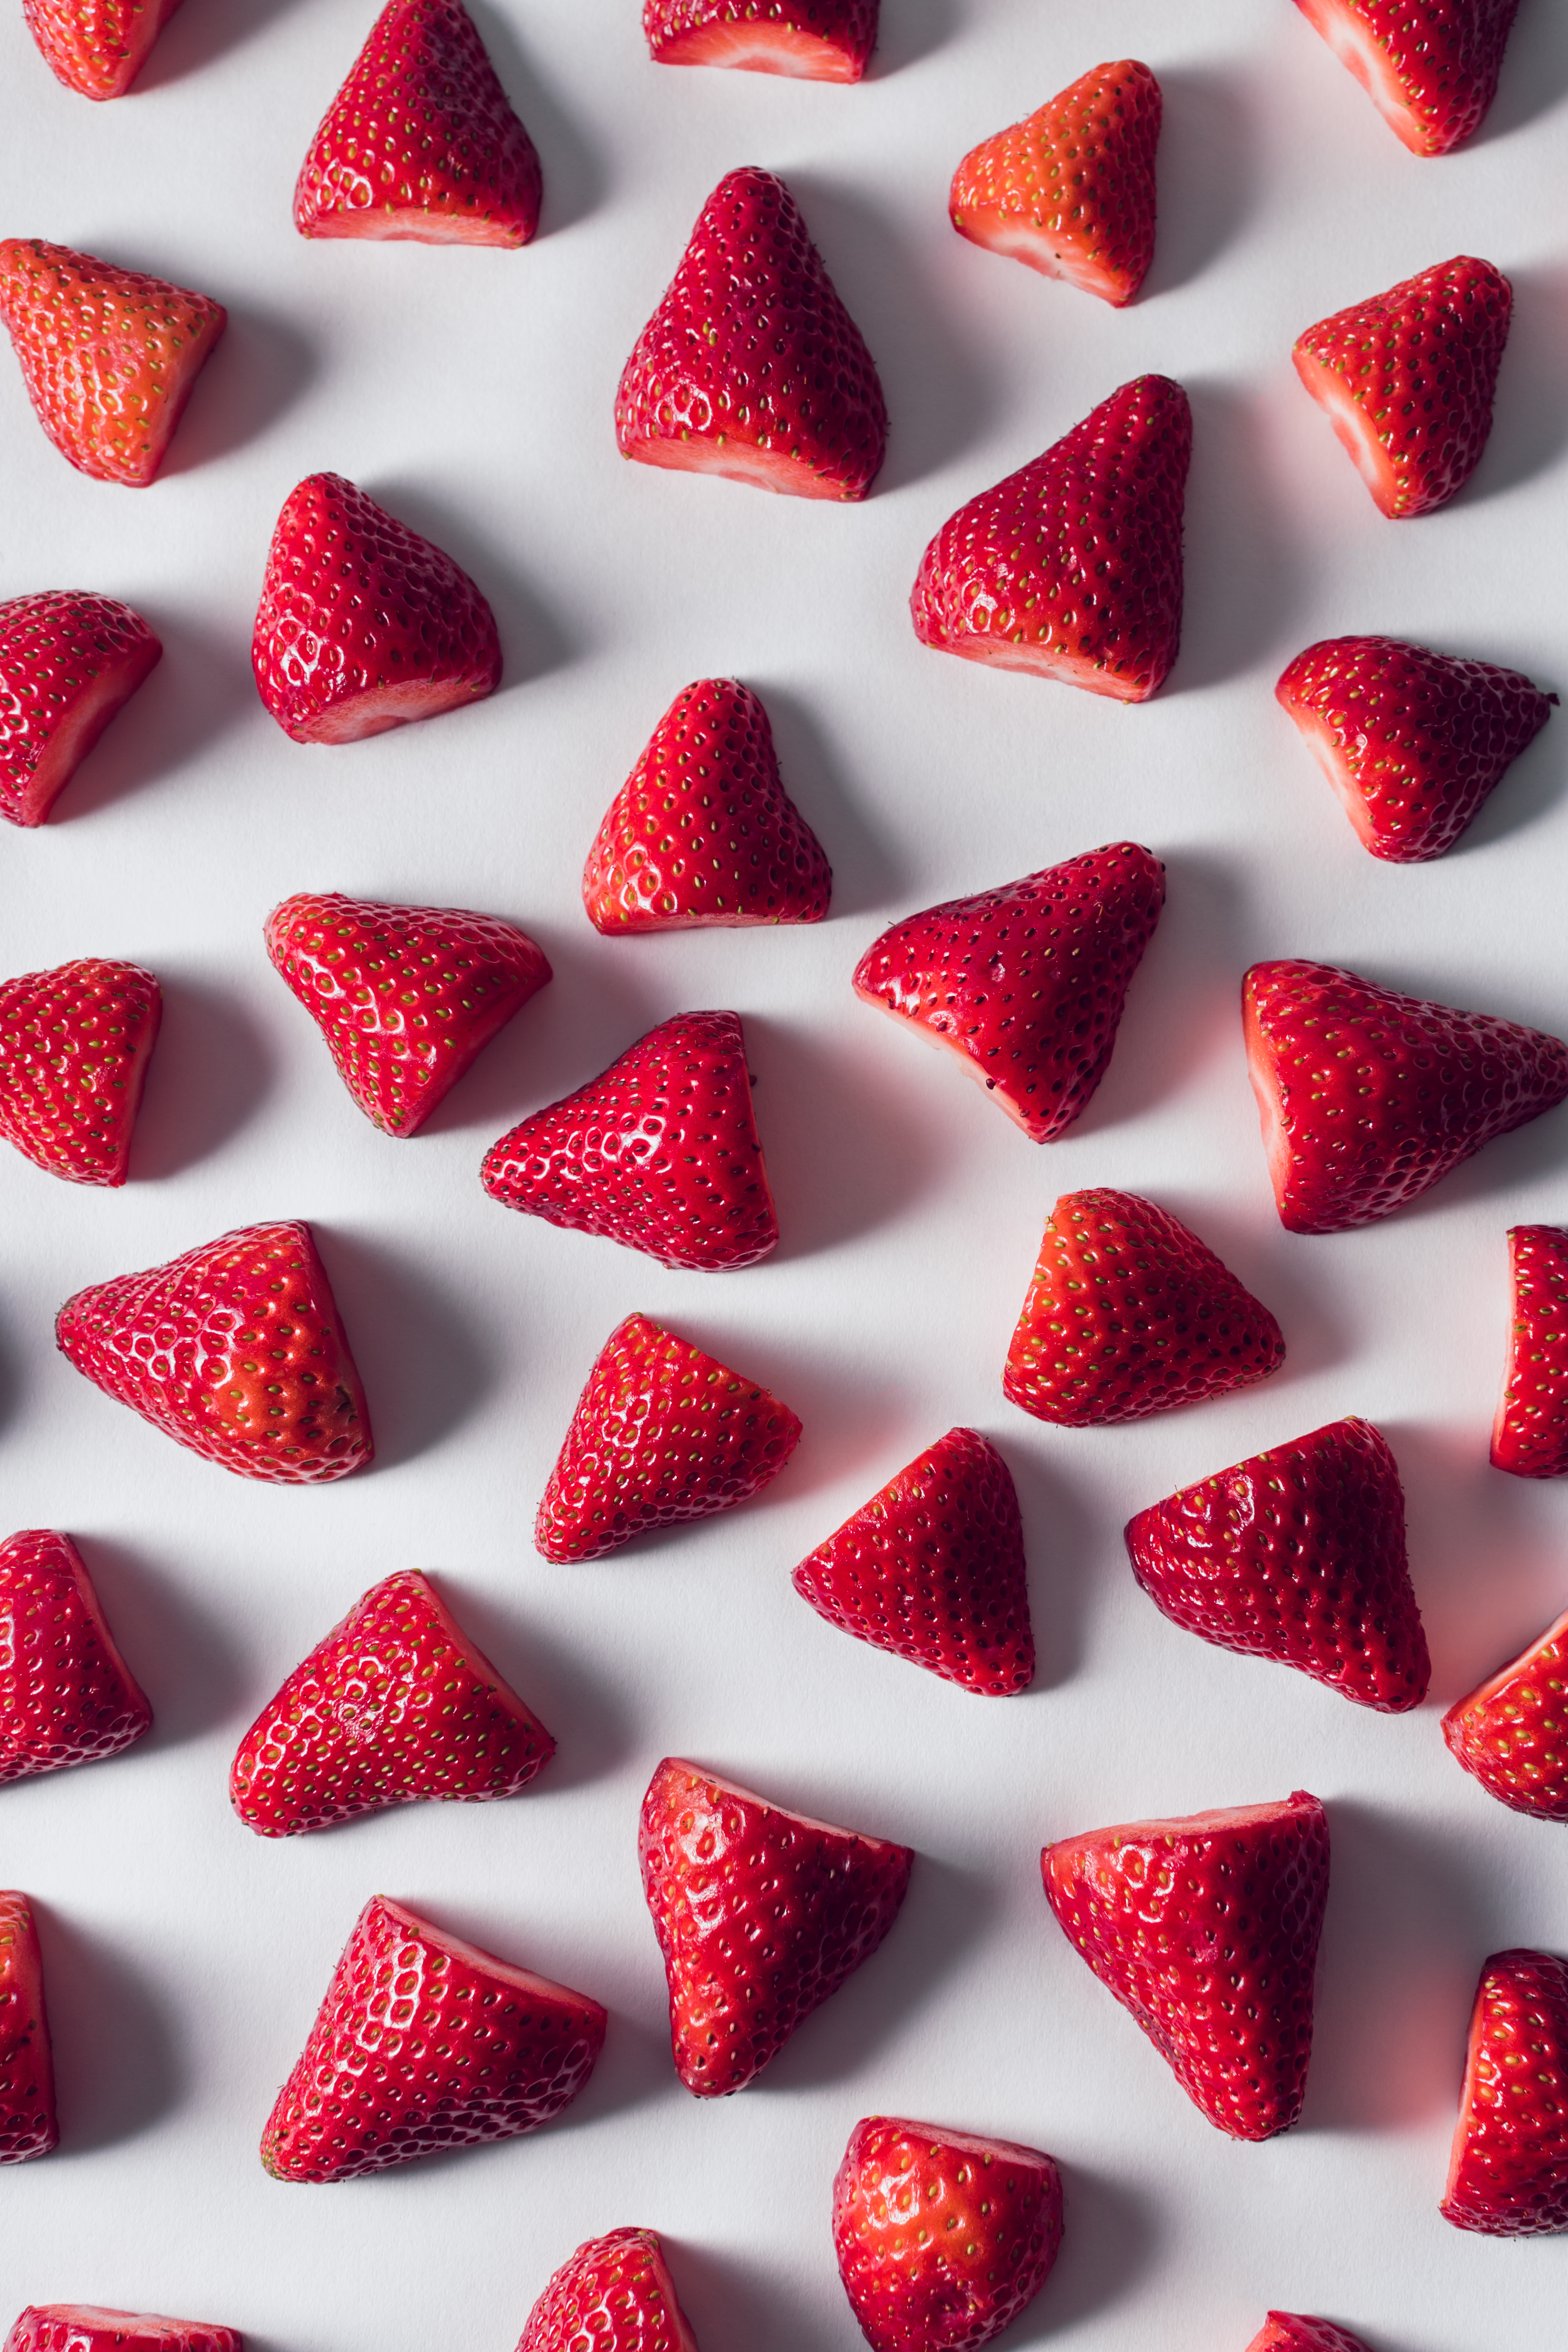 strawberry, berries, minimalism, ripe